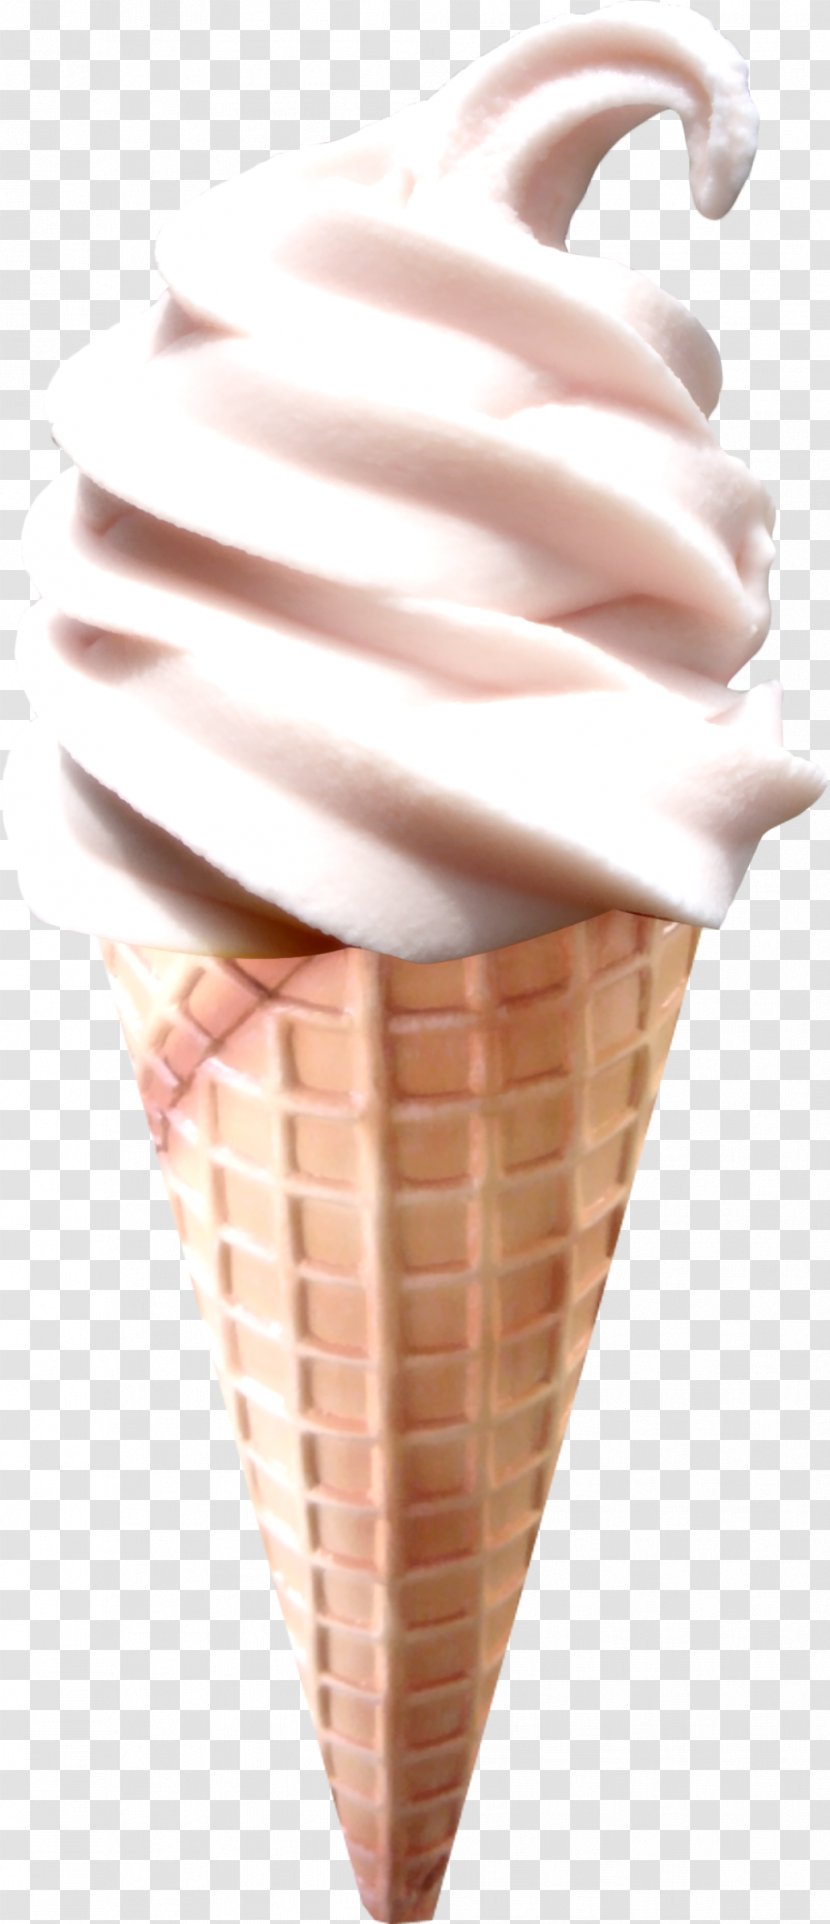 Ice Cream Cones Chocolate Neapolitan - Dessert - ICECREAM Transparent PNG